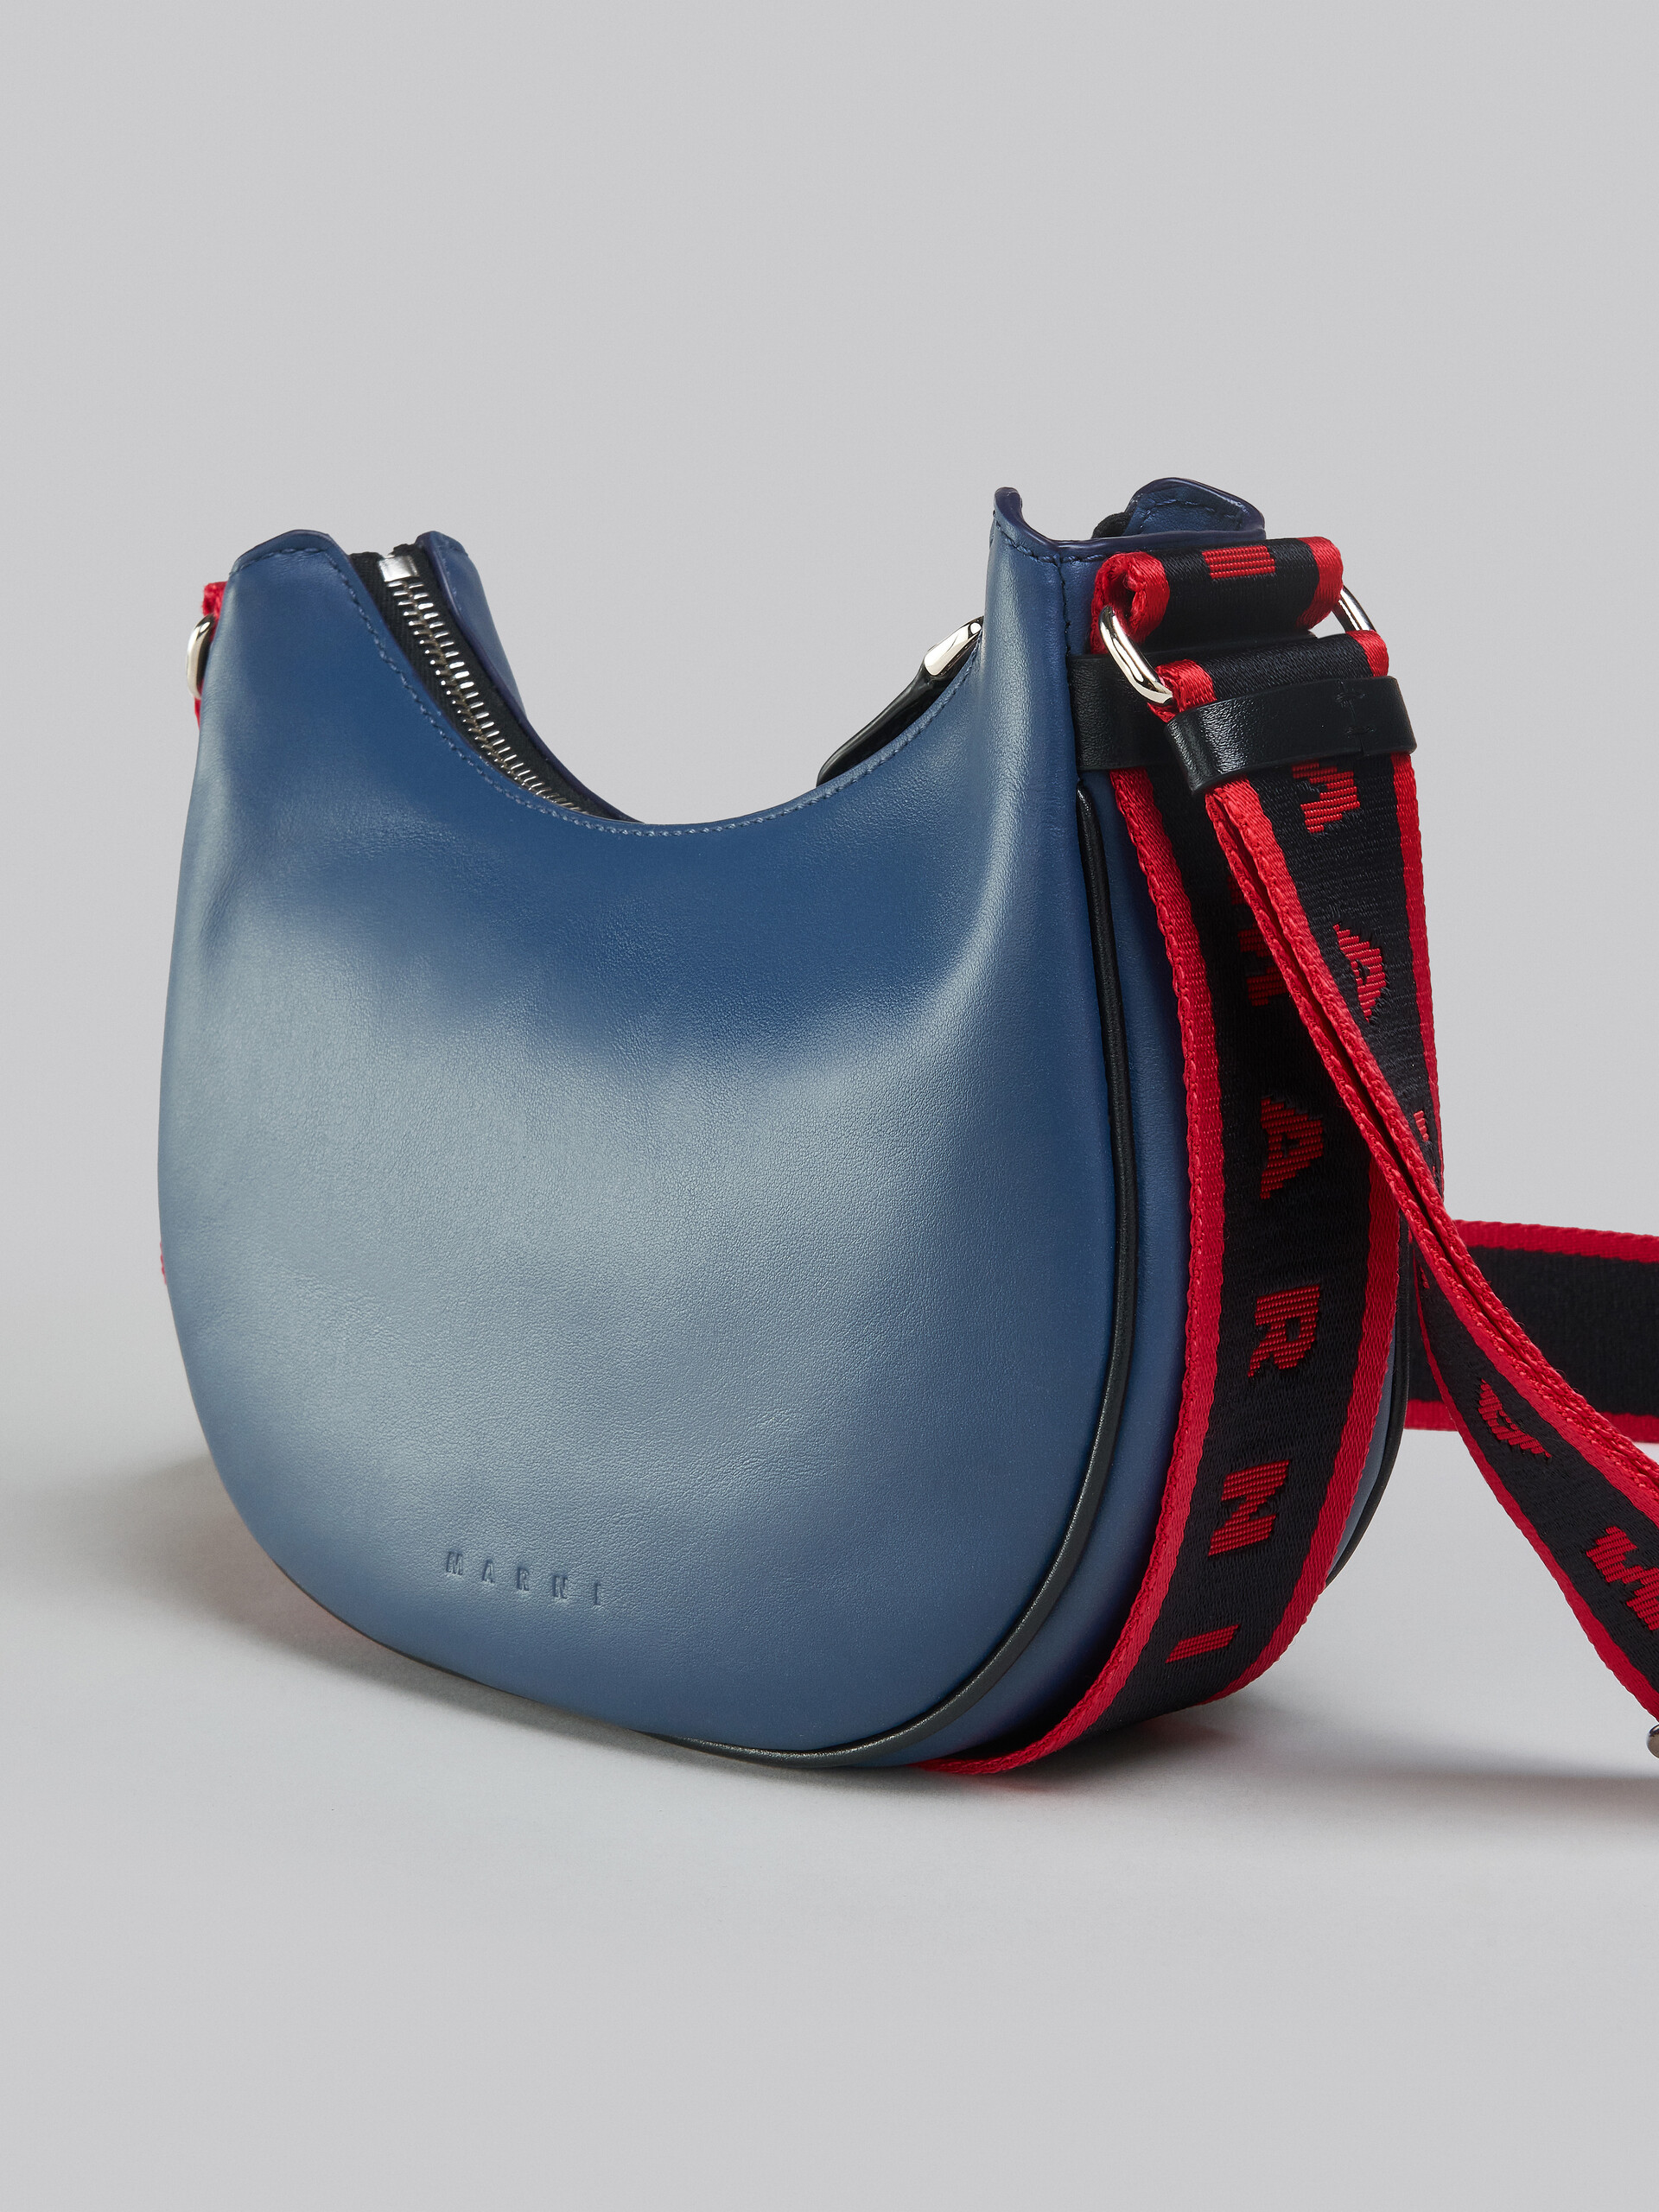 Bey Small Bag in blue leather - Shoulder Bag - Image 5